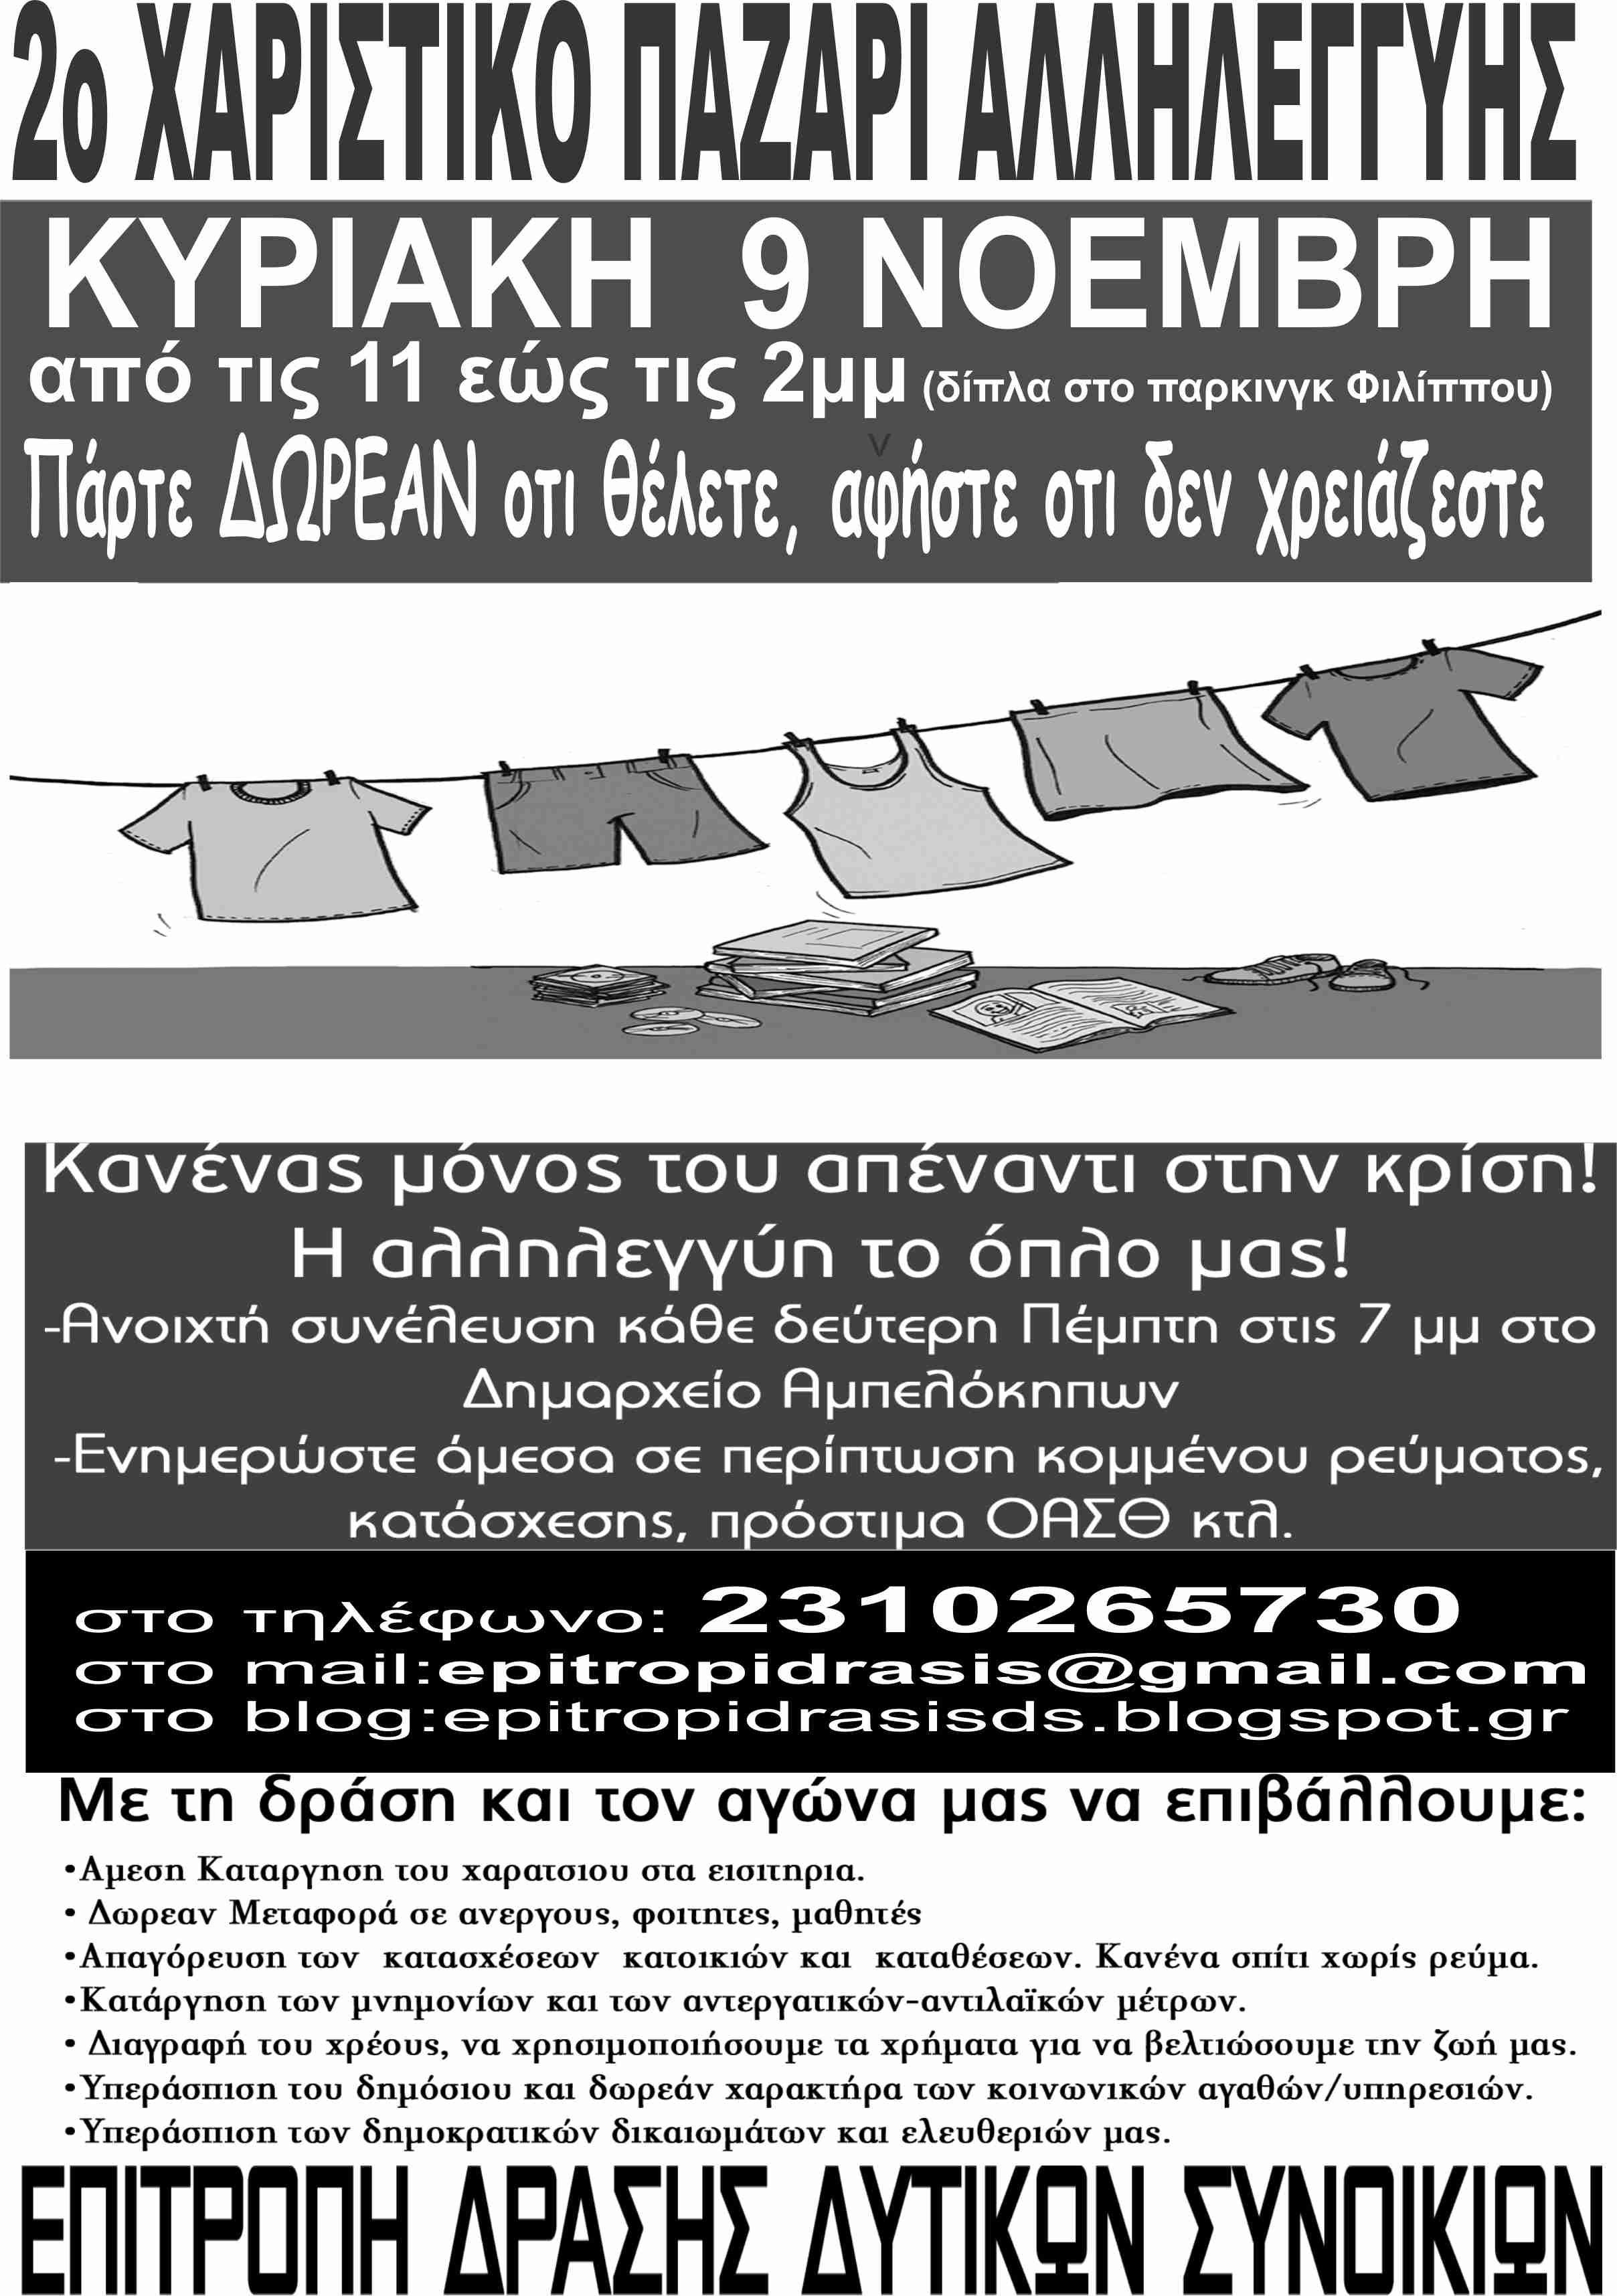 Θεσσαλονίκη: 2ο χαριστικό παζάρι αλληλεγγύης [Κυριακή 09/11, 11:00 έως 14:00]